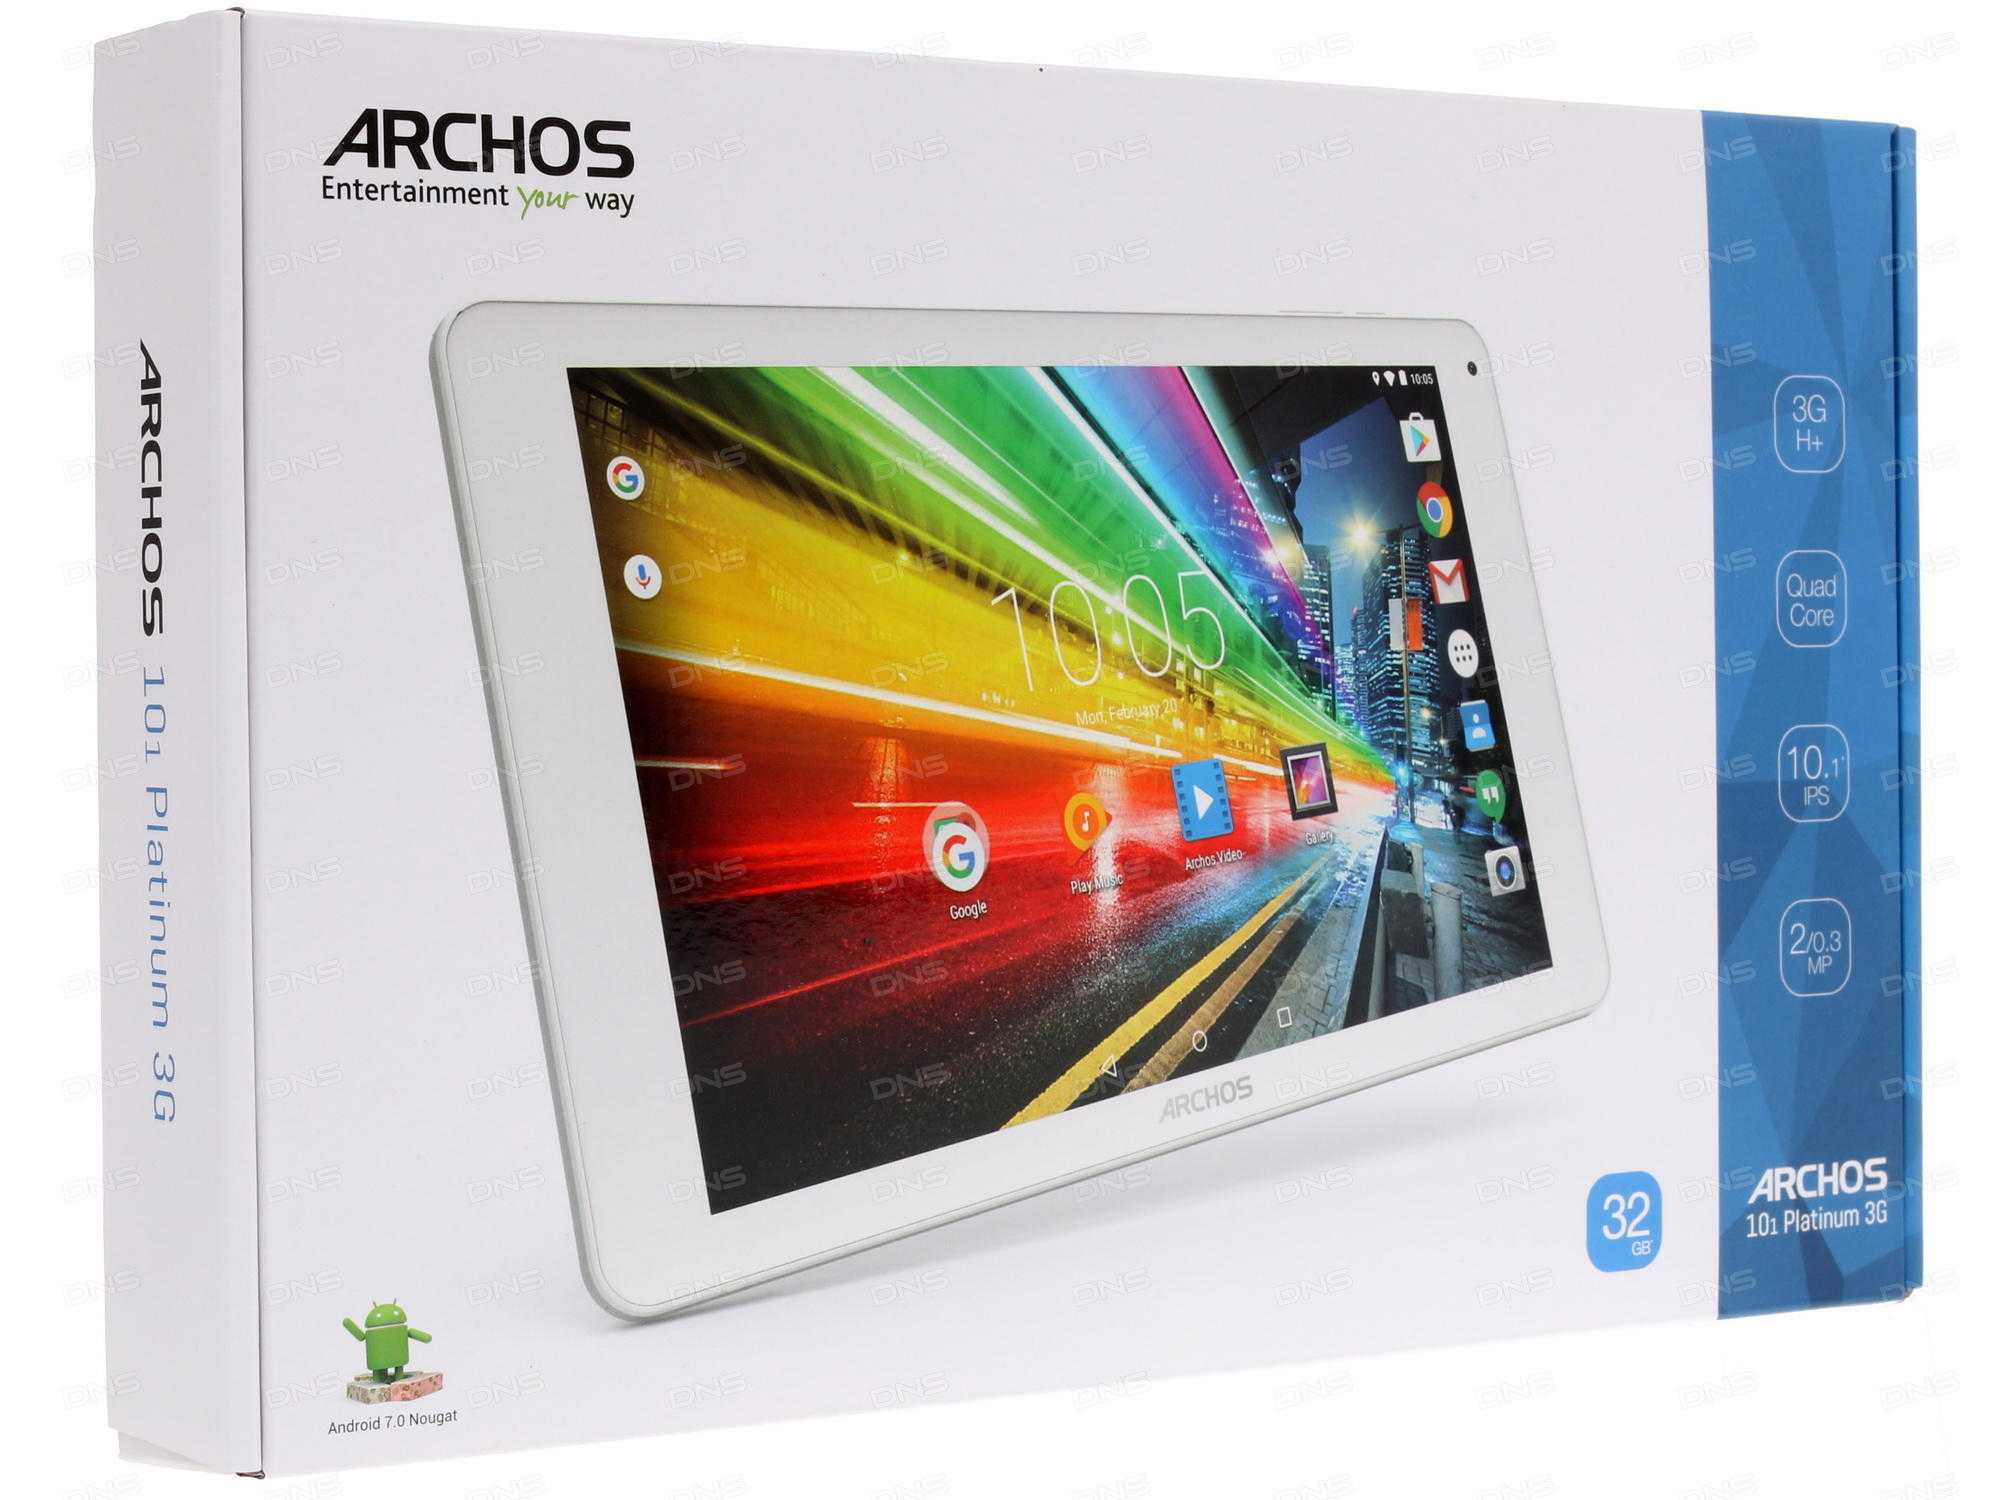 Archos 101 platinum 3g 16gb купить по акционной цене , отзывы и обзоры.